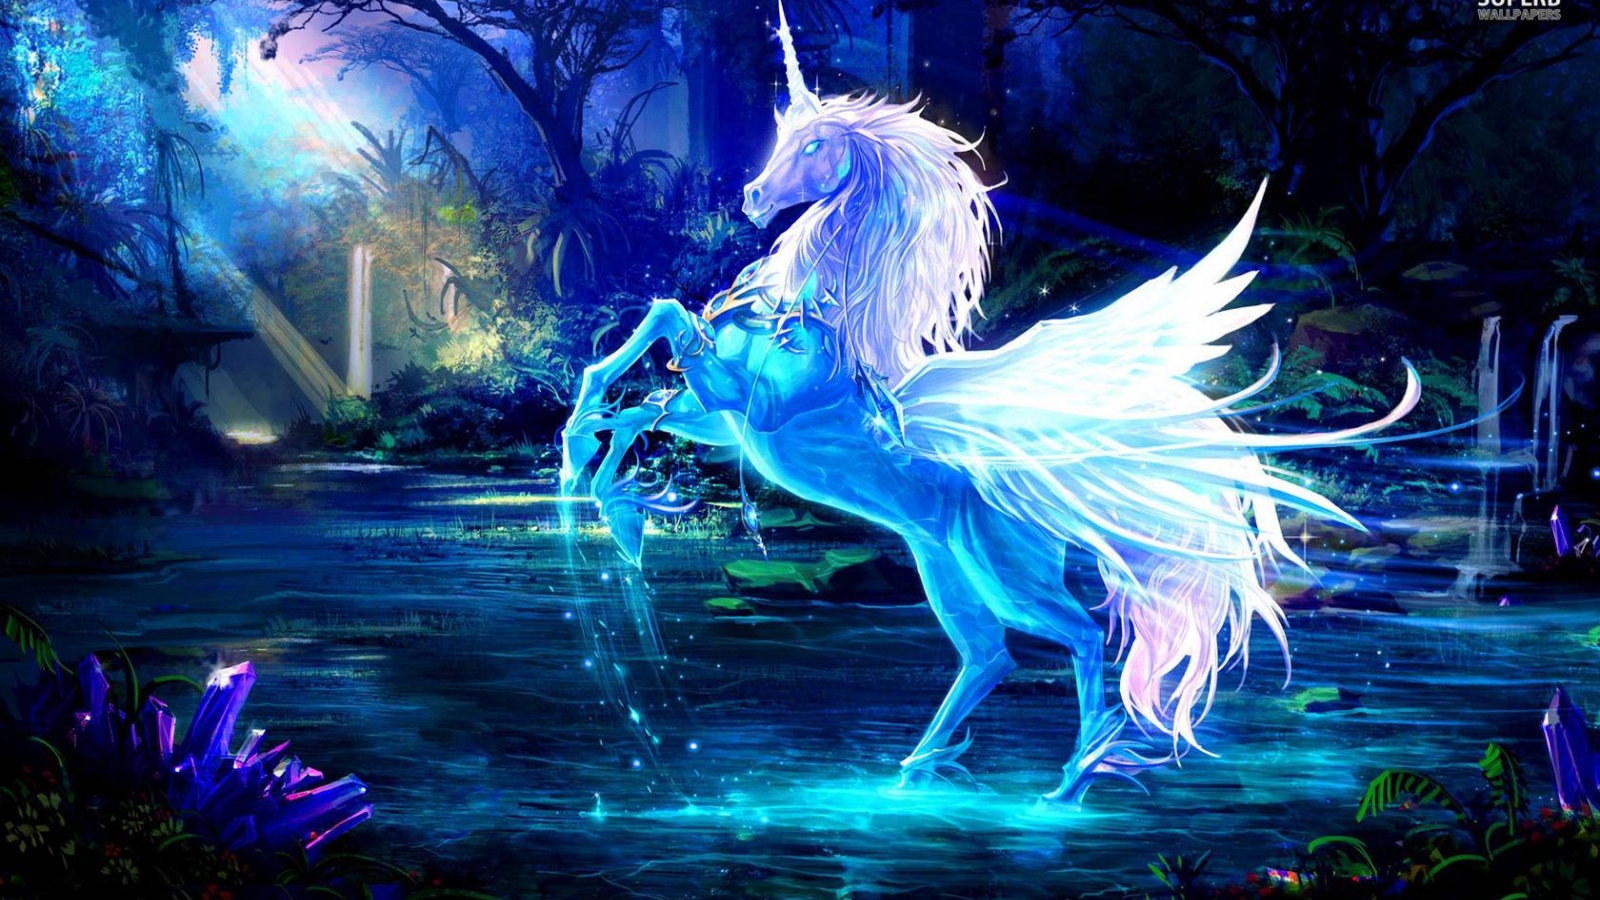 fondos de pantalla de unicornio hd,personaje de ficción,criatura mítica,unicornio,cg artwork,mitología